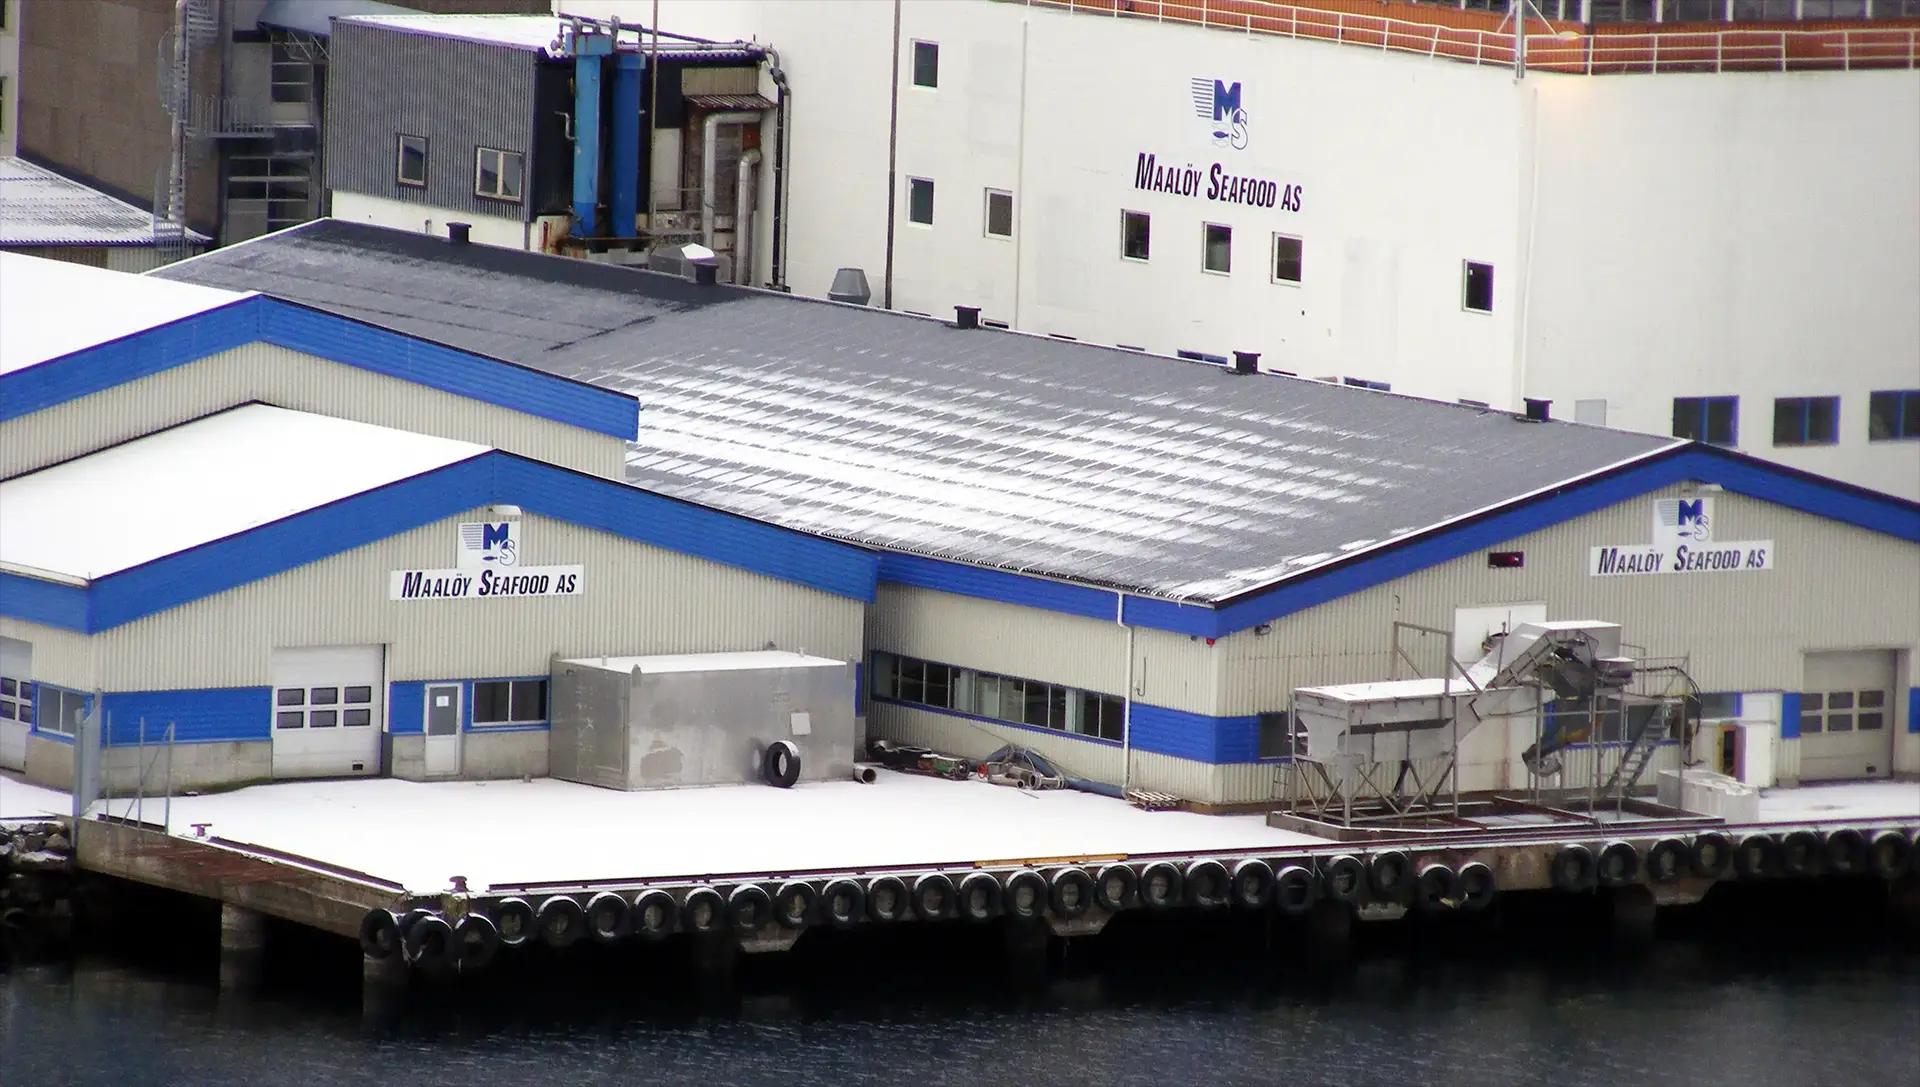 Le quai où les bateaux viennent accoster à Maaløy seafood AS - Norvège